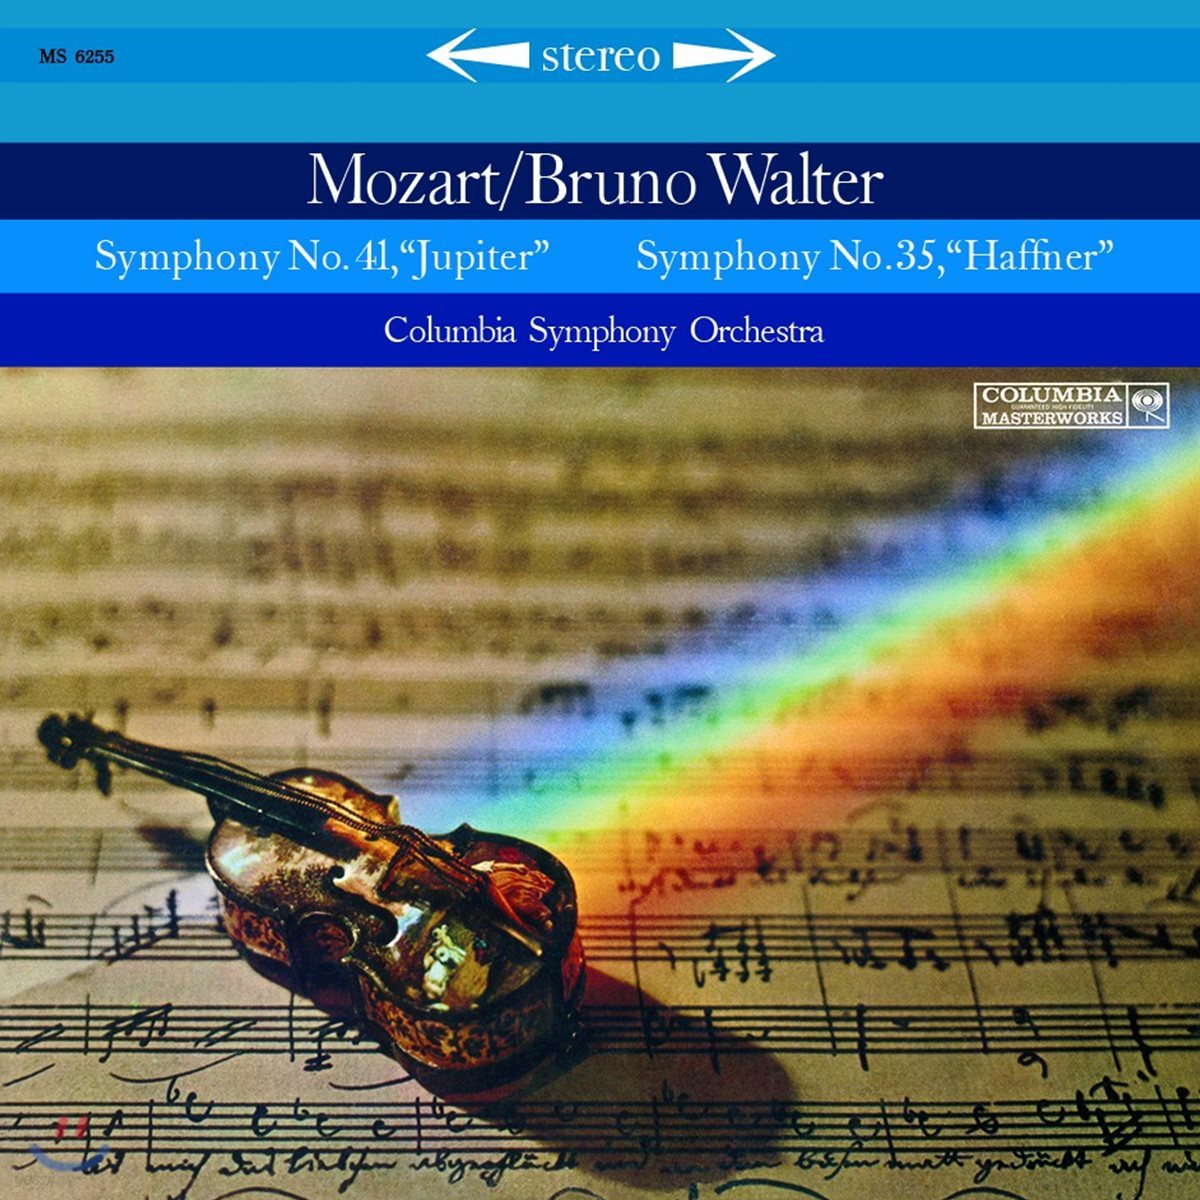 Bruno Walter 모차르트: 교향곡 35번 &#39;하프너&#39;, 41번 &#39;주피터&#39; (Mozart: Symphony K.385 &#39;Haffner&#39;, K.551 &#39;Jupiter&#39;) [LP]